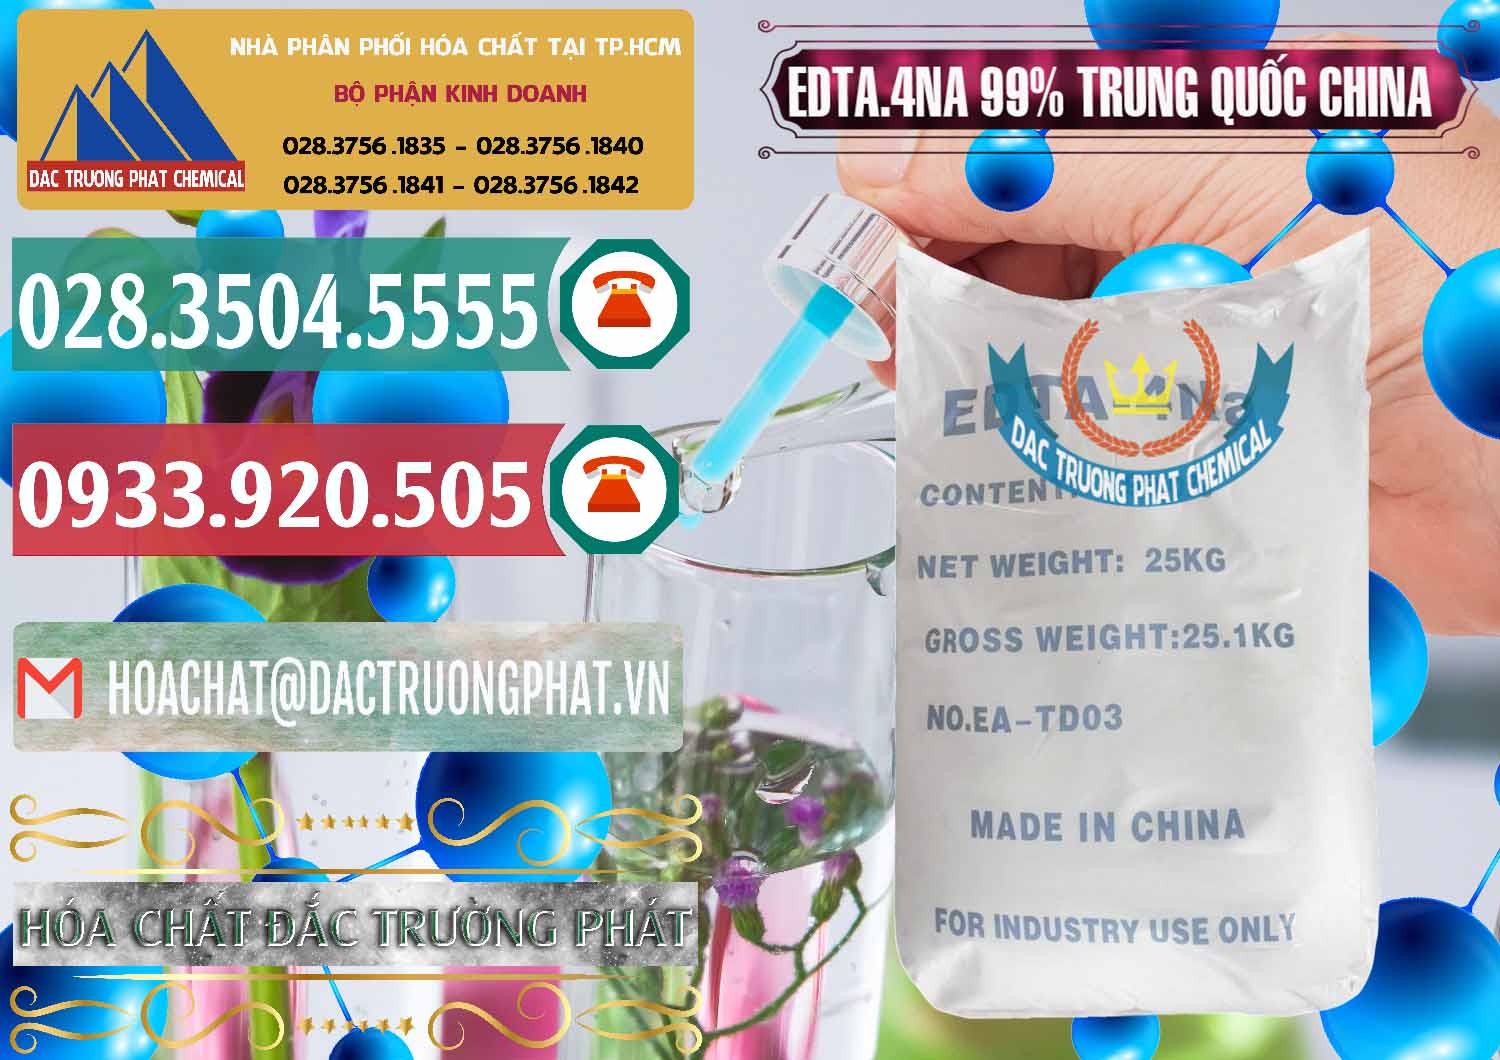 Chuyên phân phối - bán EDTA.4NA - EDTA Muối 99% Trung Quốc China - 0292 - Cty chuyên nhập khẩu và cung cấp hóa chất tại TP.HCM - muabanhoachat.vn